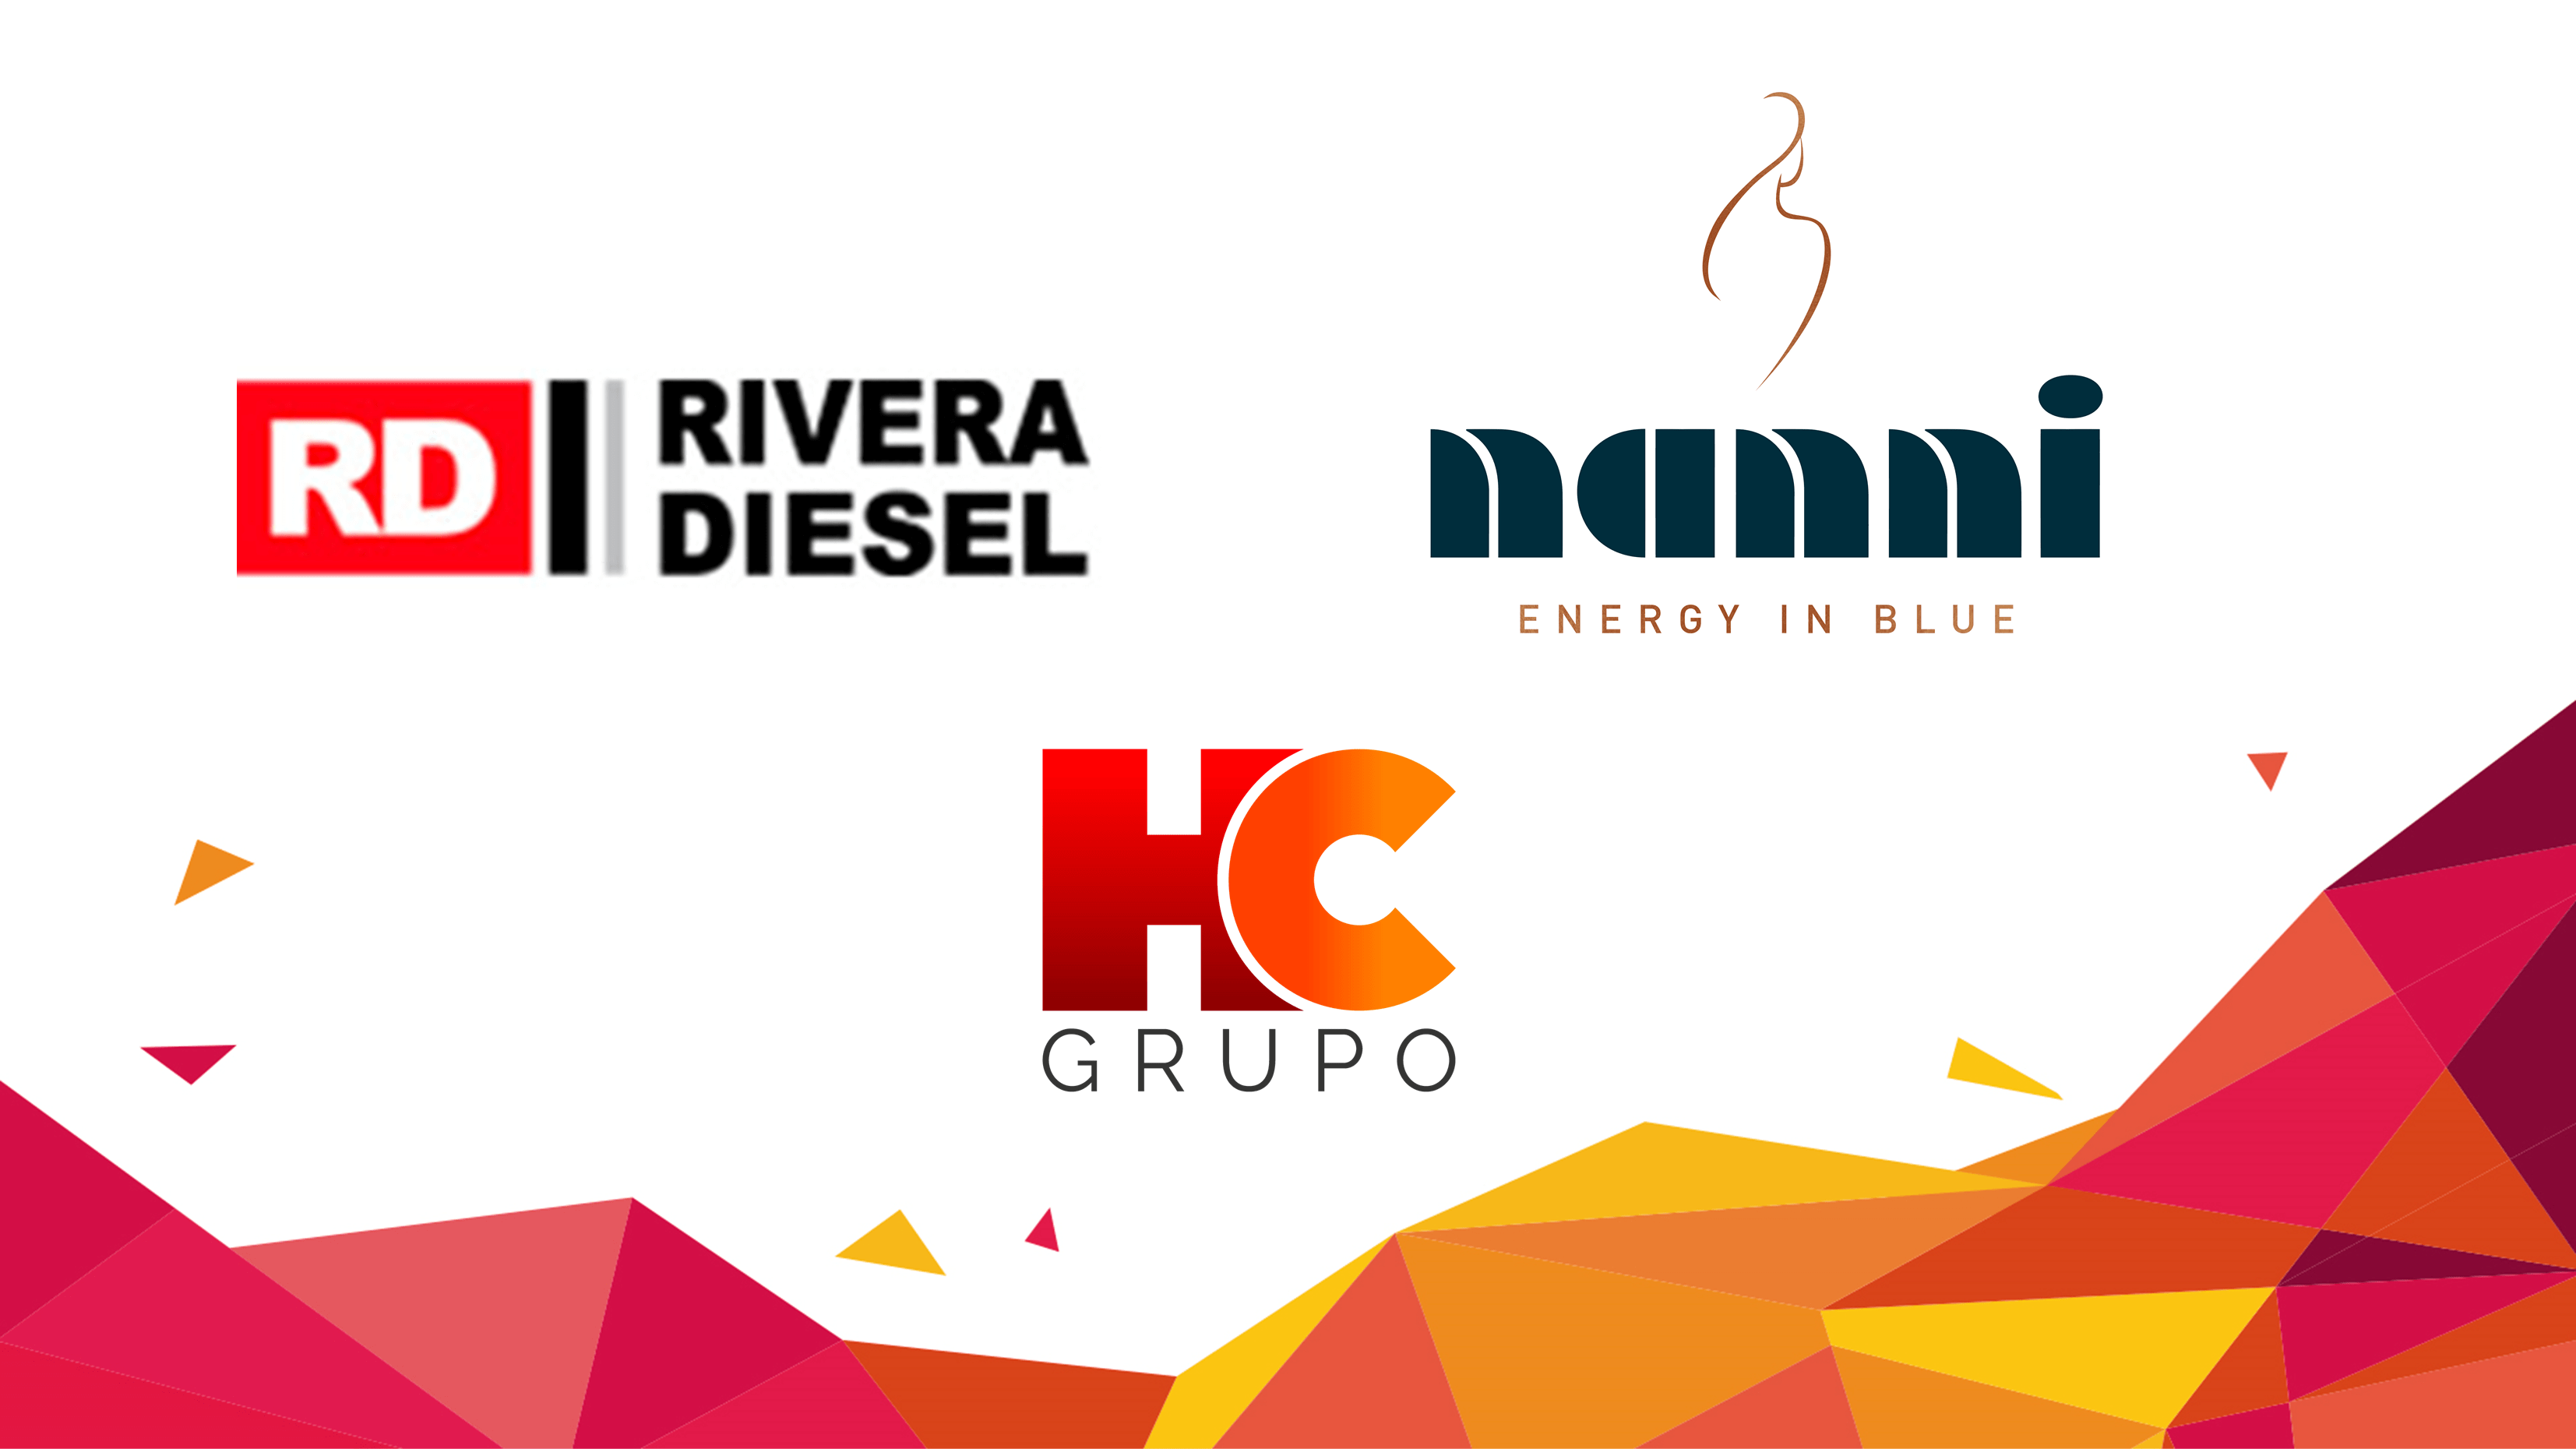 GRUPOS ELECTRÓGENOS - Rivera Diesel - Grupos electrógenos Perú